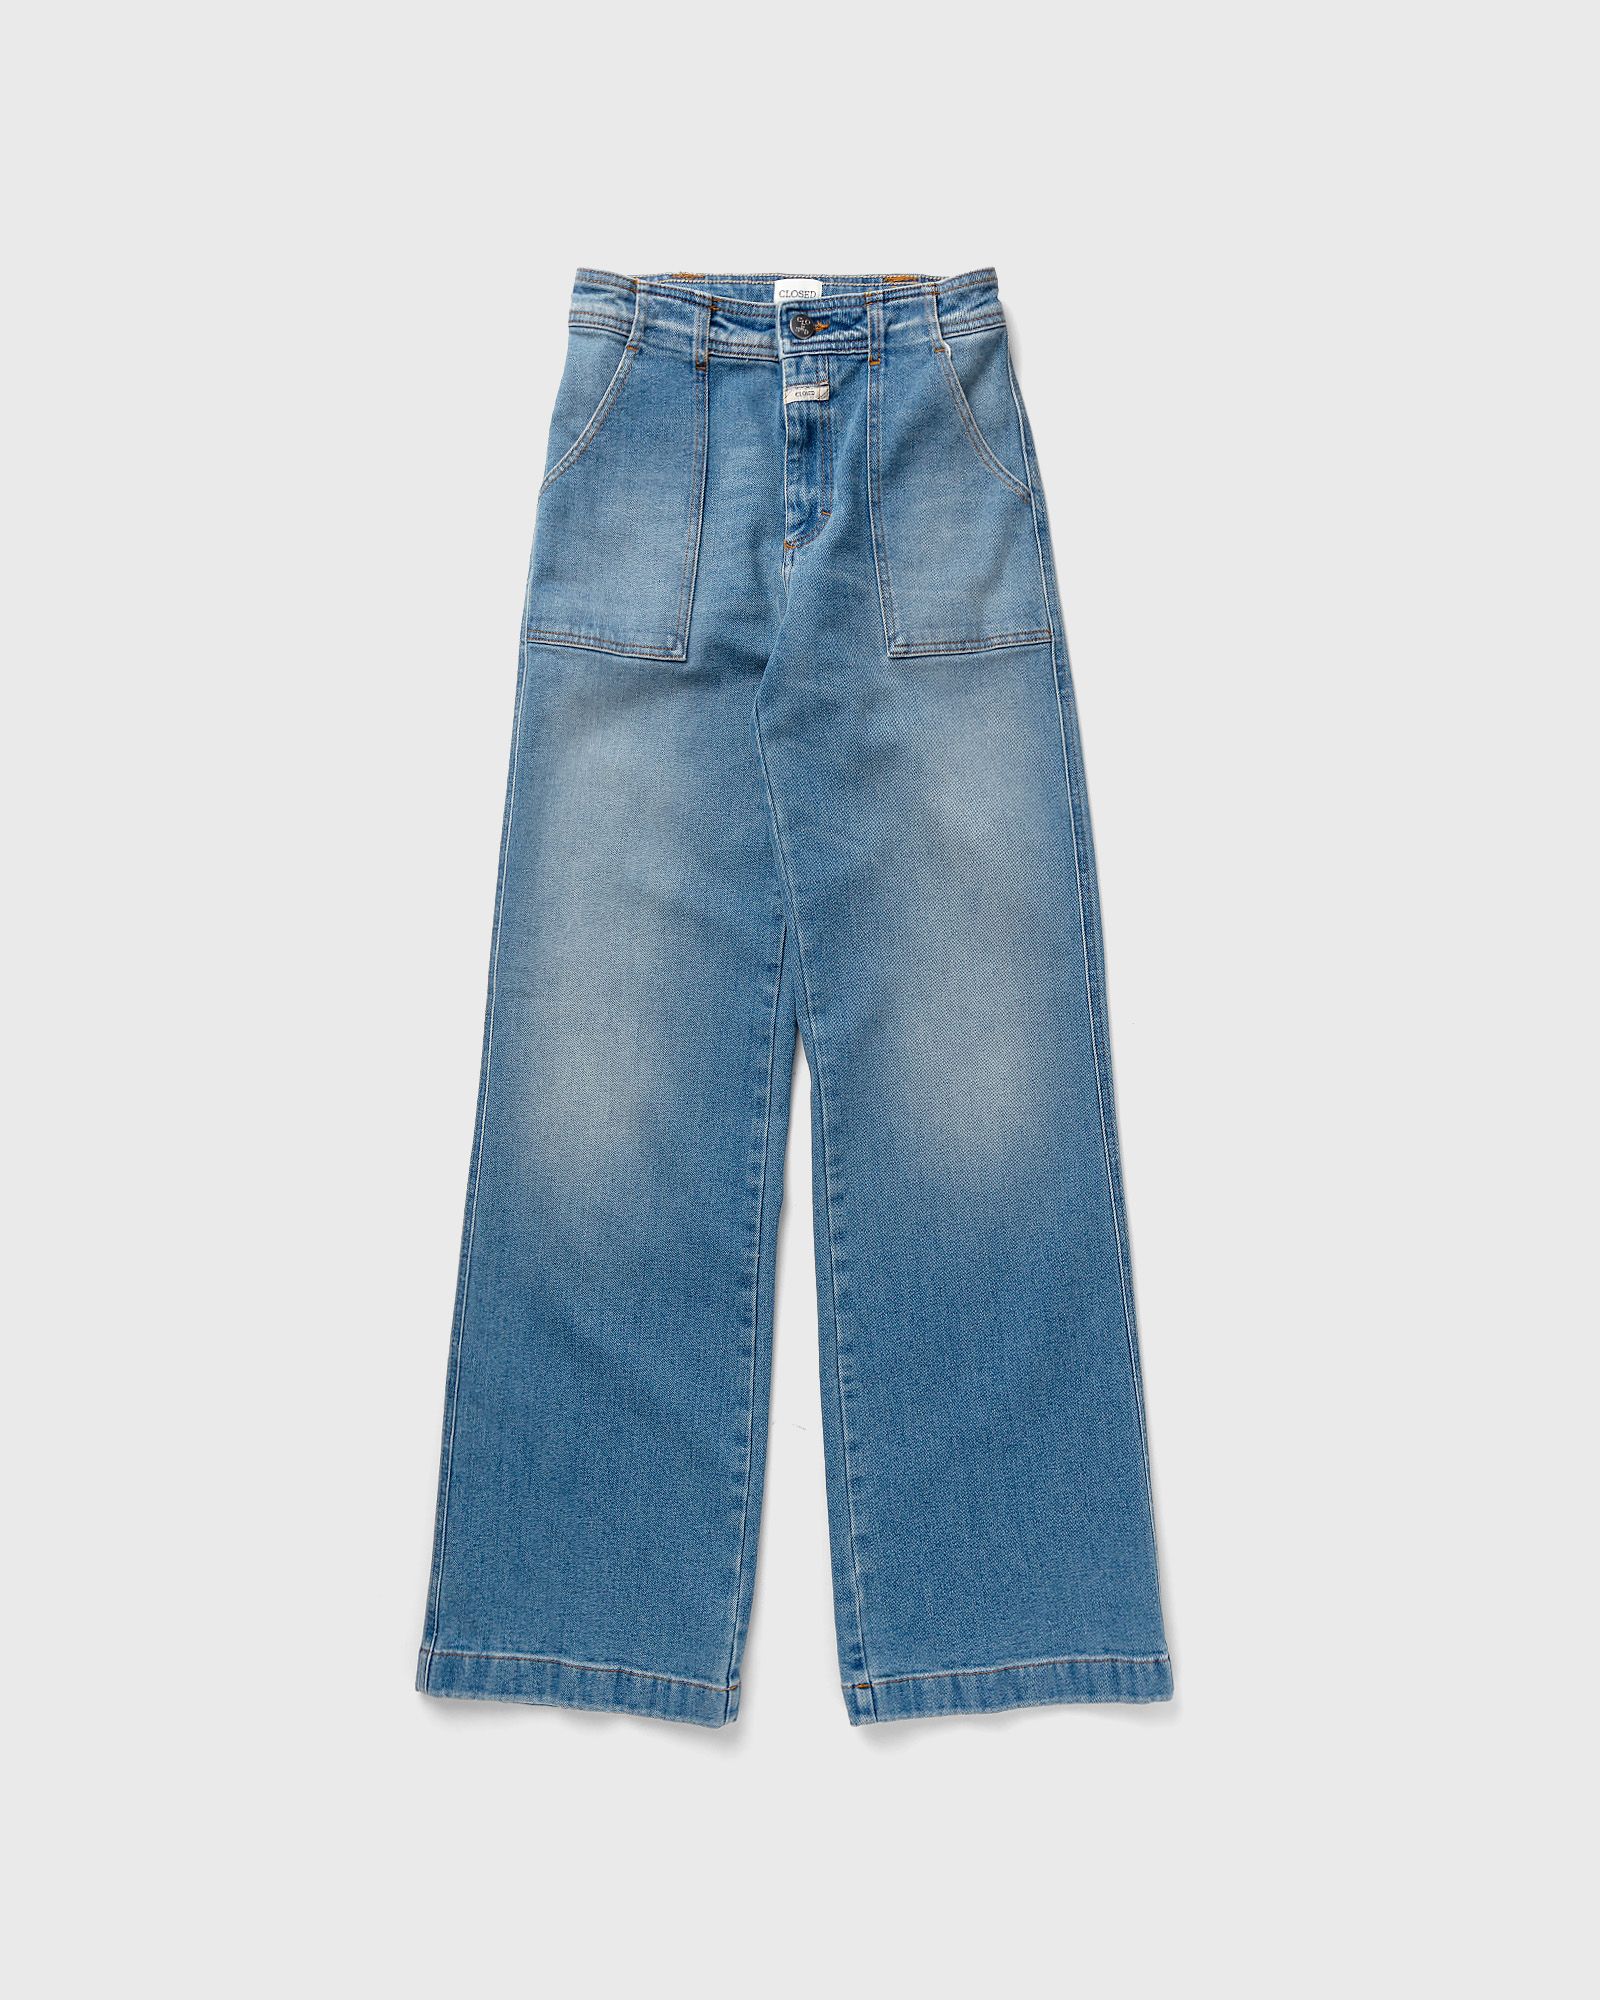 CLOSED - aria women jeans blue in größe:m